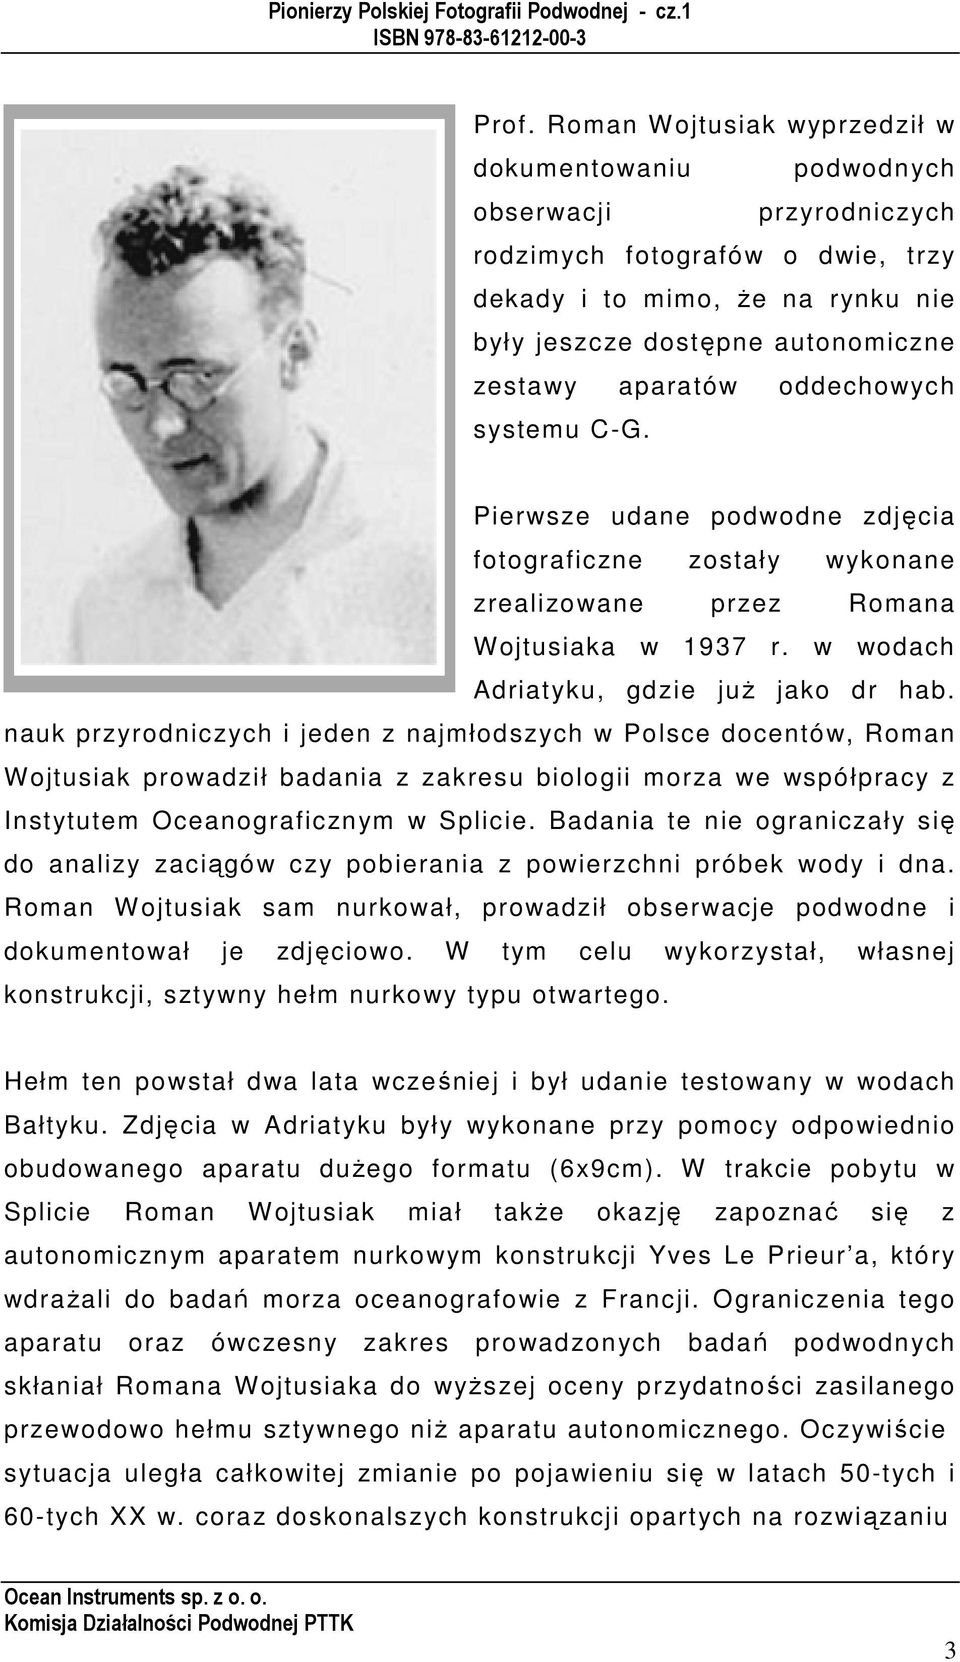 nauk przyrodniczych i jeden z najmłodszych w Polsce docentów, Roman Wojtusiak prowadził badania z zakresu biologii morza we współpracy z Instytutem Oceanograficznym w Splicie.